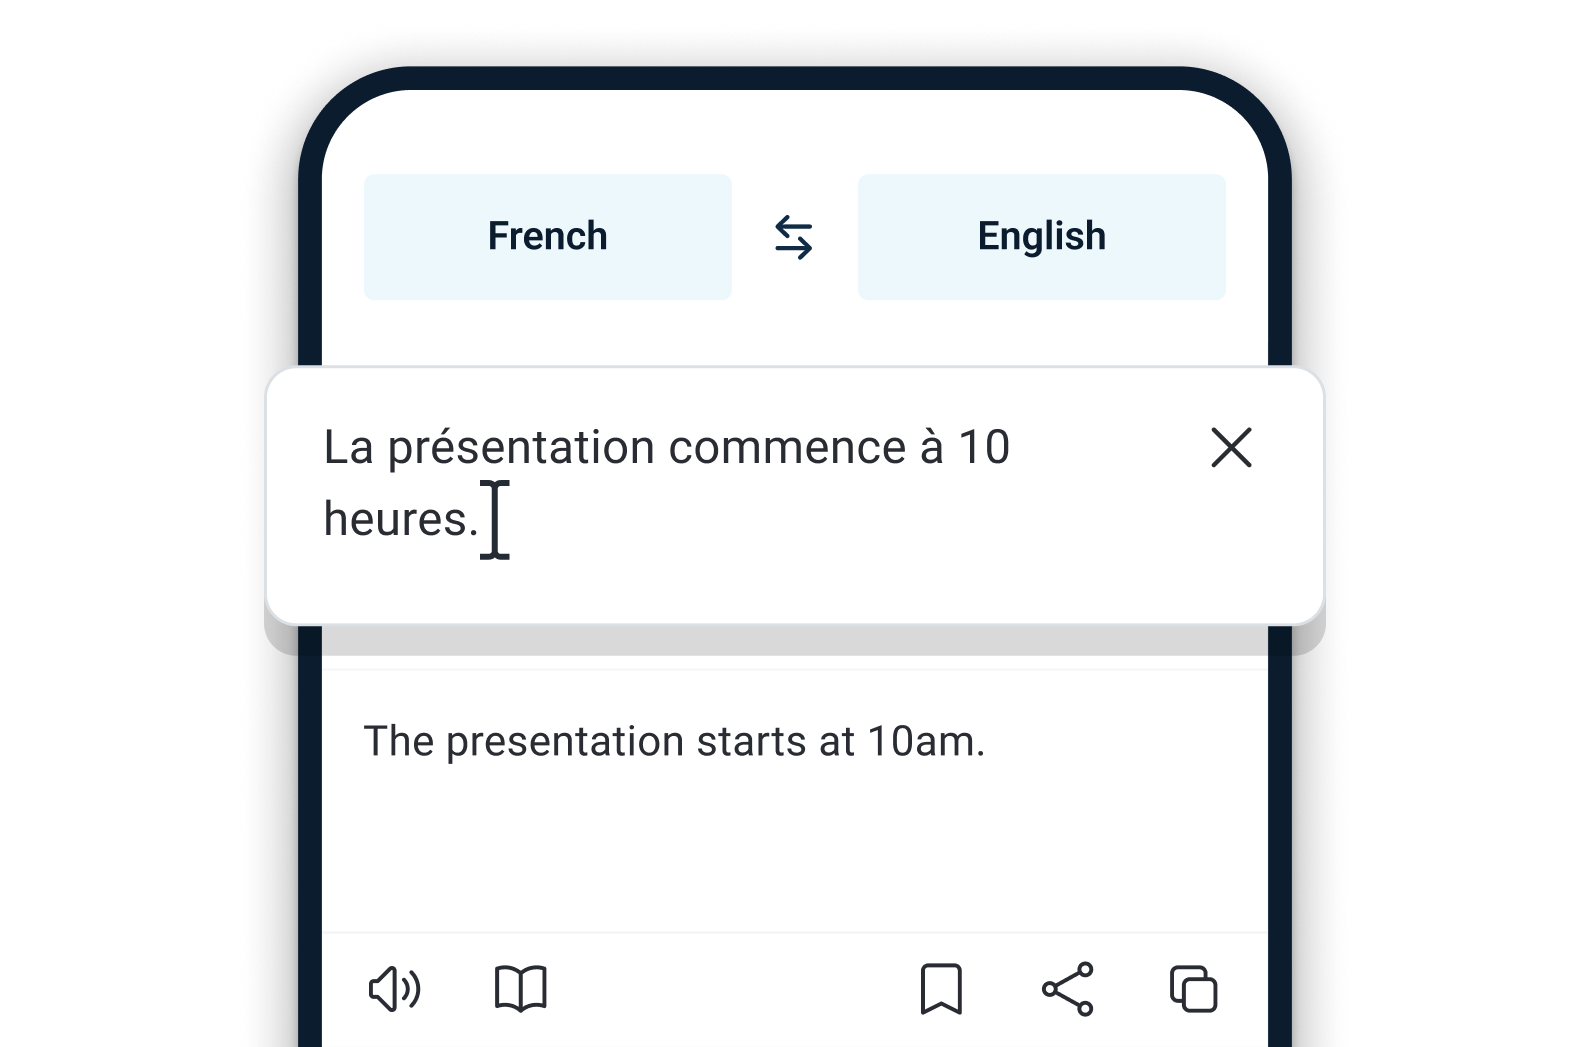 Ekran smartfona, na którym widoczna jest aplikacja DeepL z tekstem przetłumaczonym z języka francuskiego na angielski